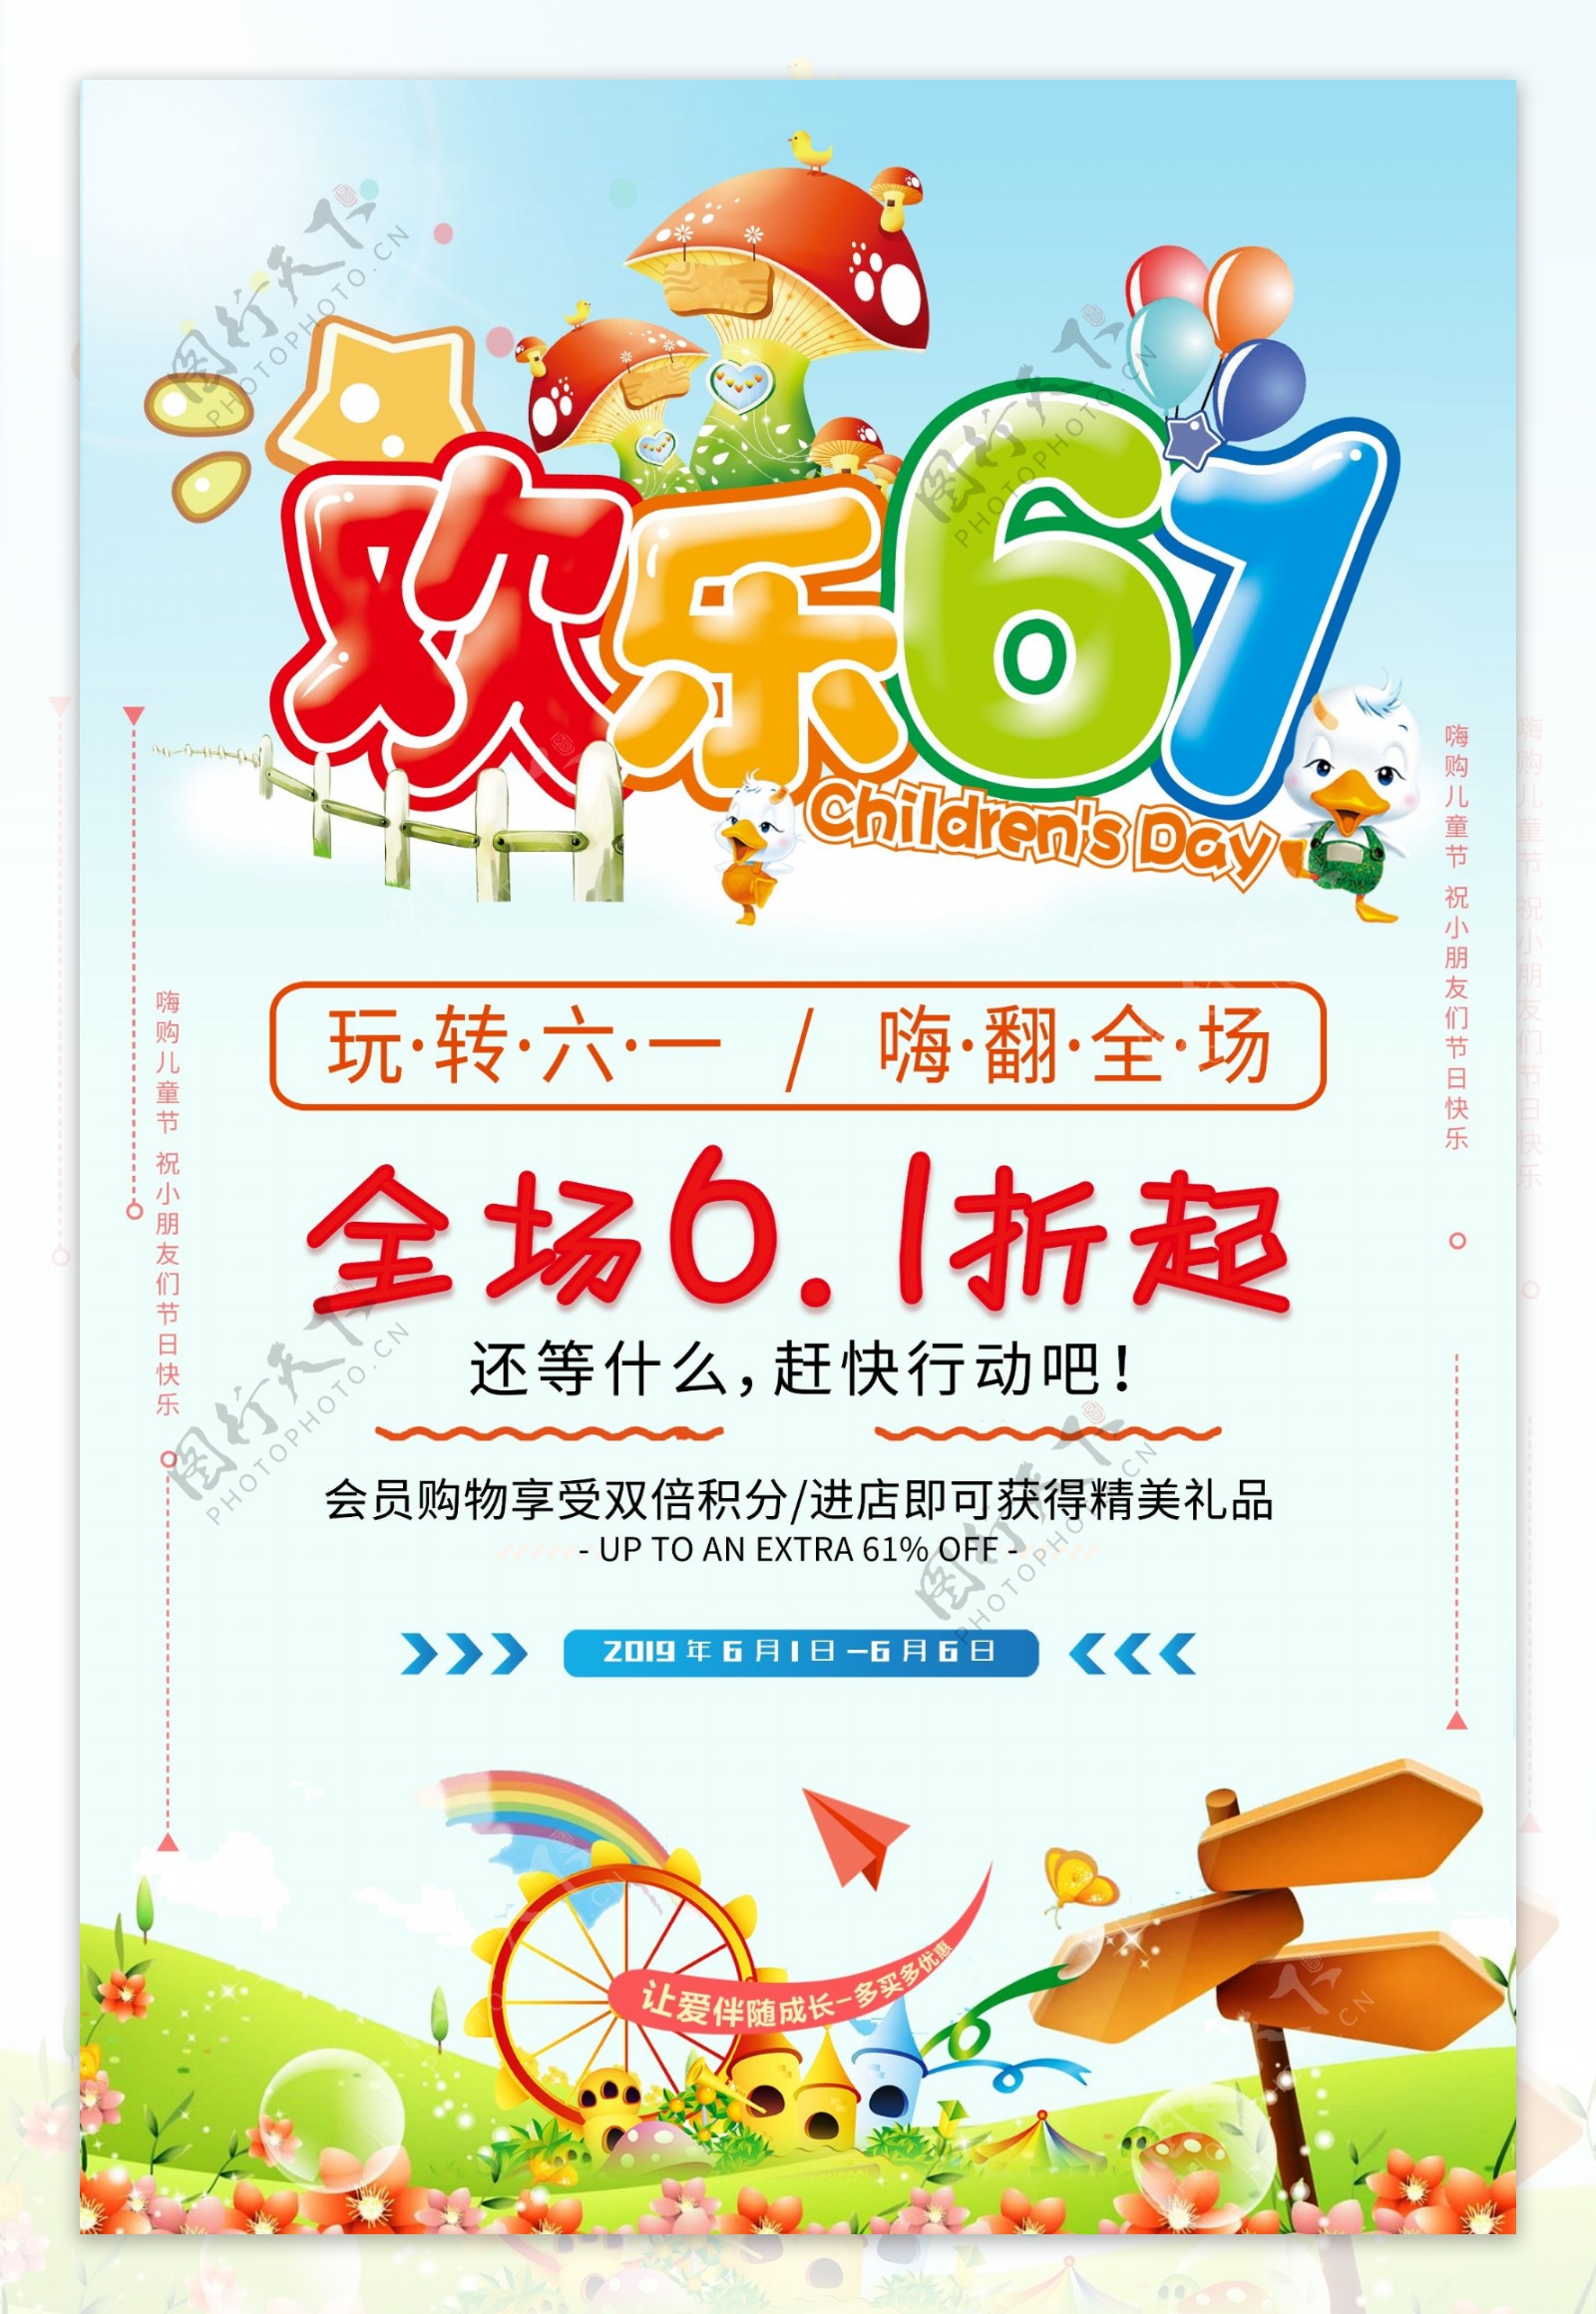 彩色清新风61儿童节节日海报设